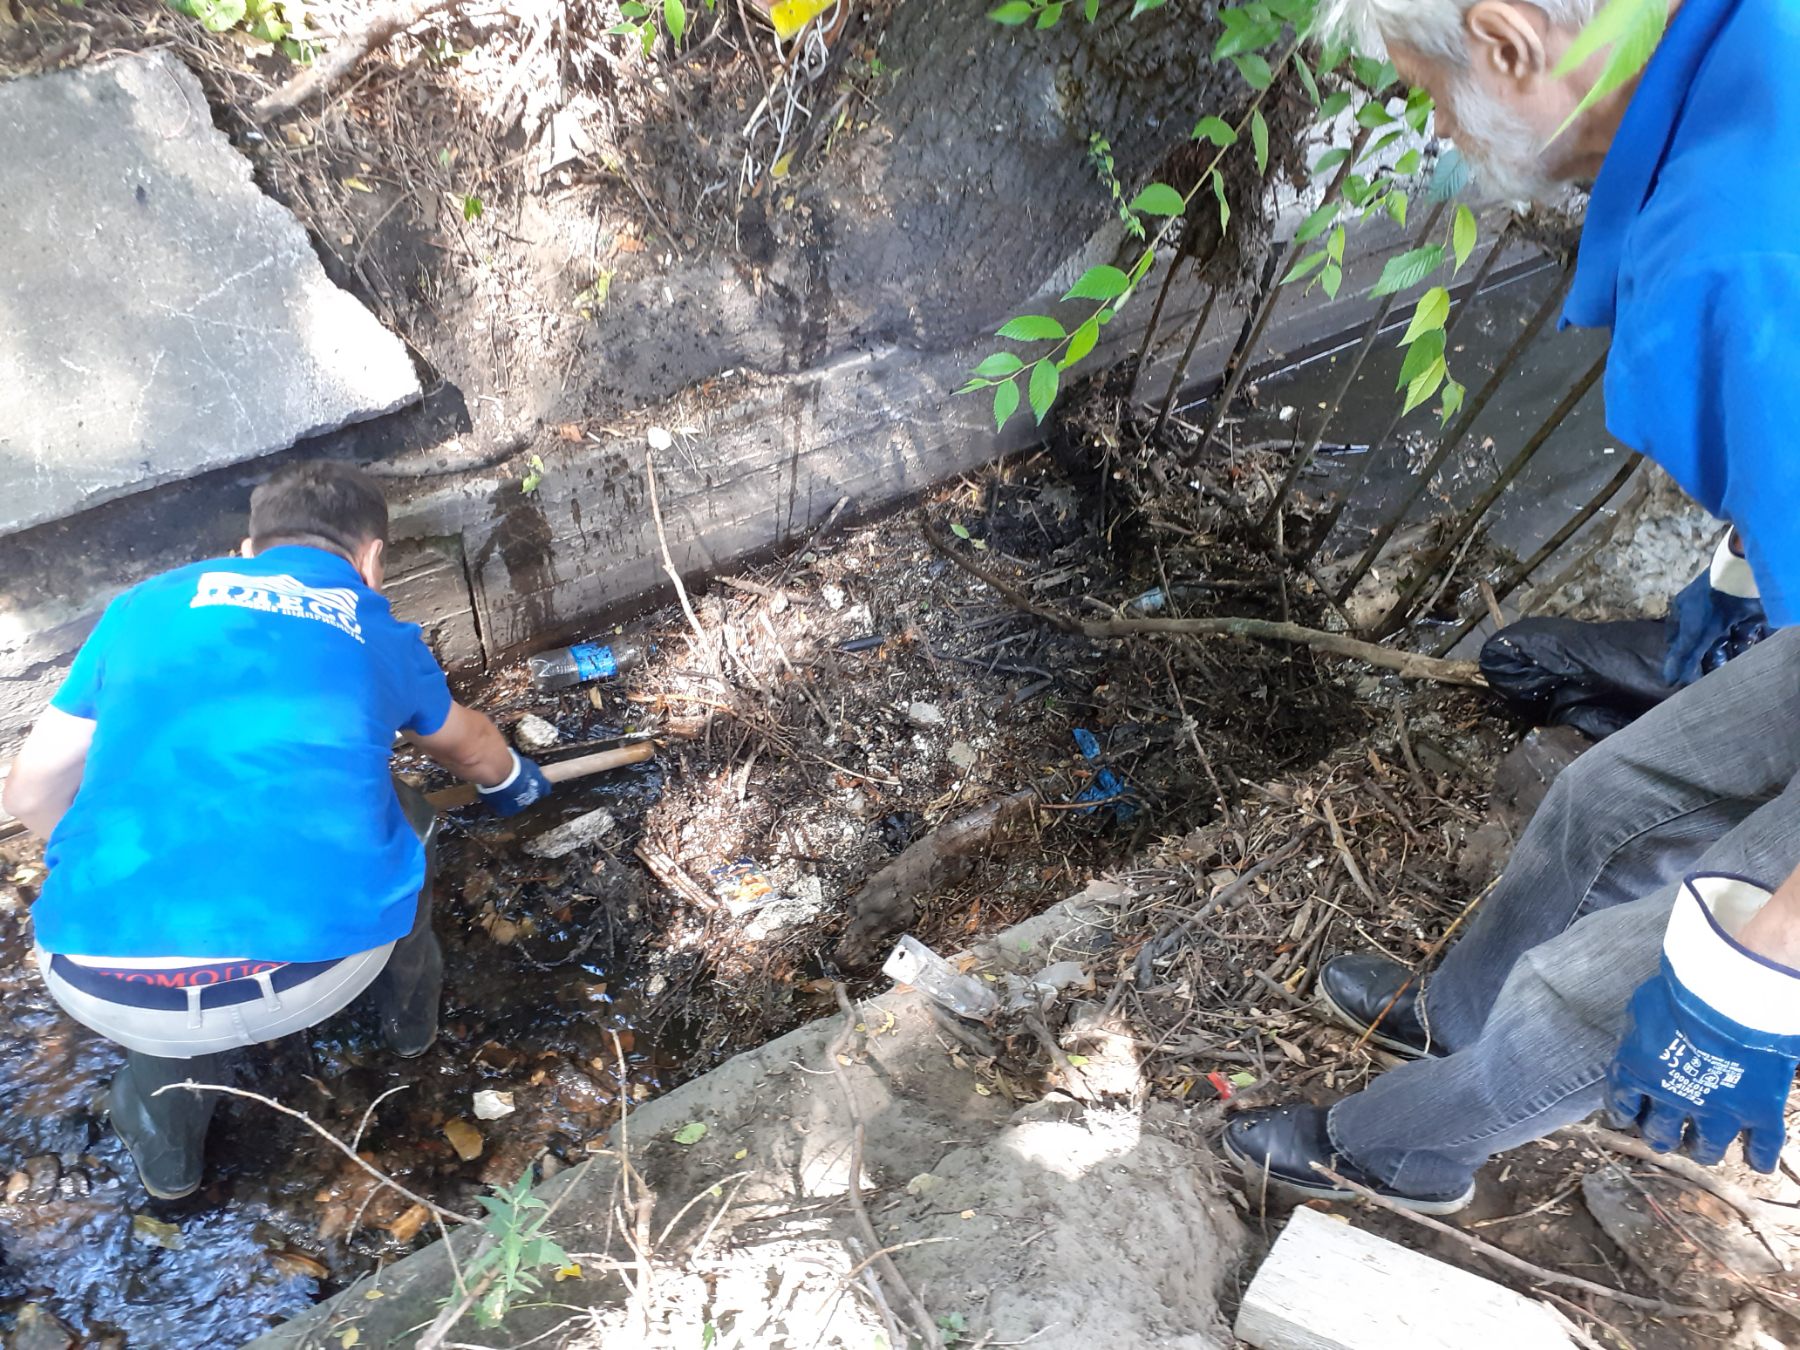 КП “Плесо” похвалились уборкой мусора на некоторых участках реки Лыбедь (фото)